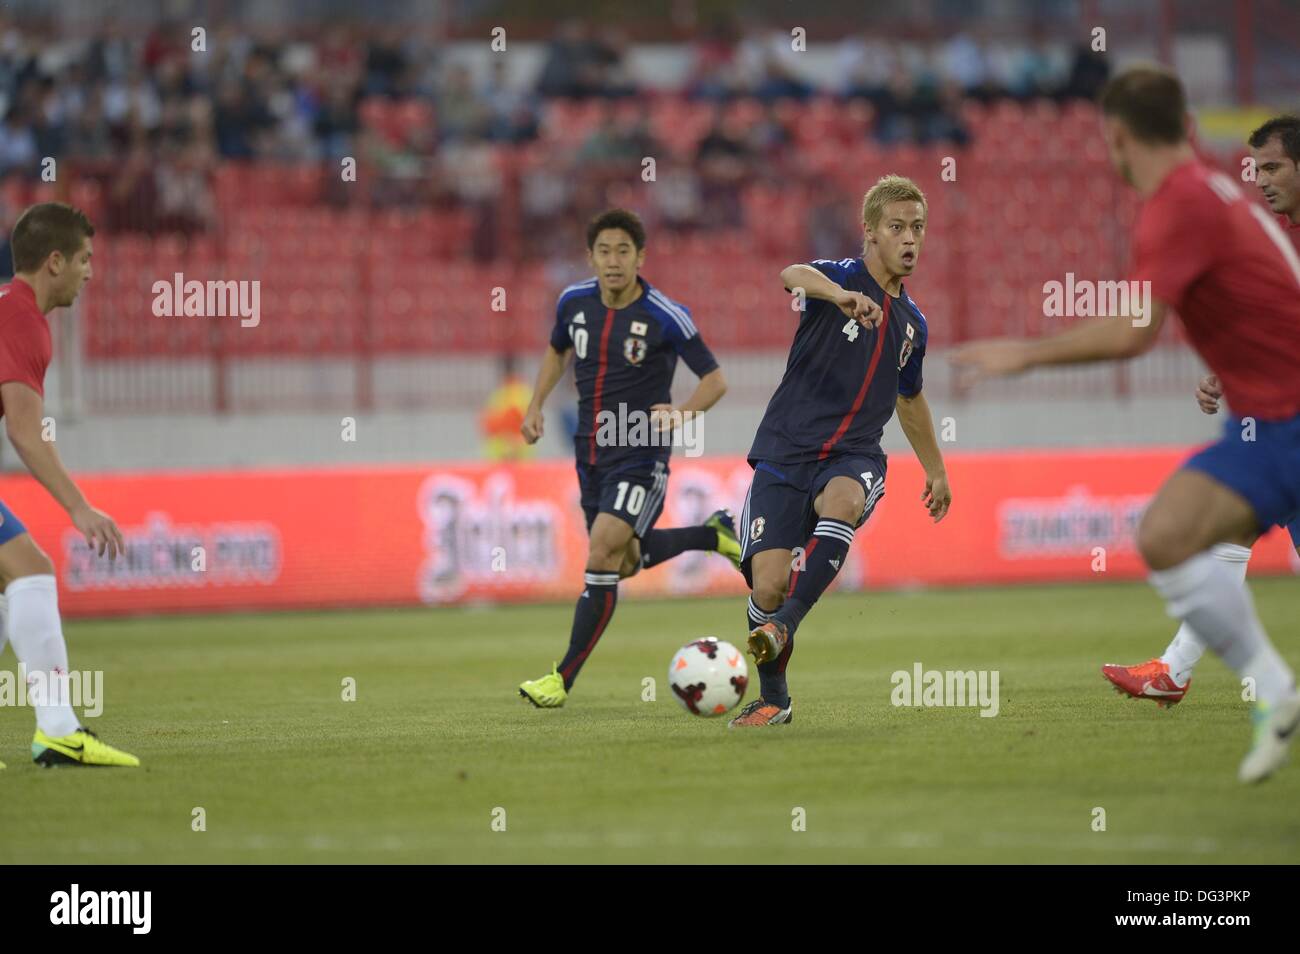 Trong trận đấu tại Novi Sad, Serbia, đội tuyển bóng đá Nhật Bản đã có một màn trình diễn đầy ấn tượng. Những bức ảnh đội hình và cầu thủ sẽ giúp bạn hiểu rõ hơn về những chiến thuật và kỹ năng của họ.